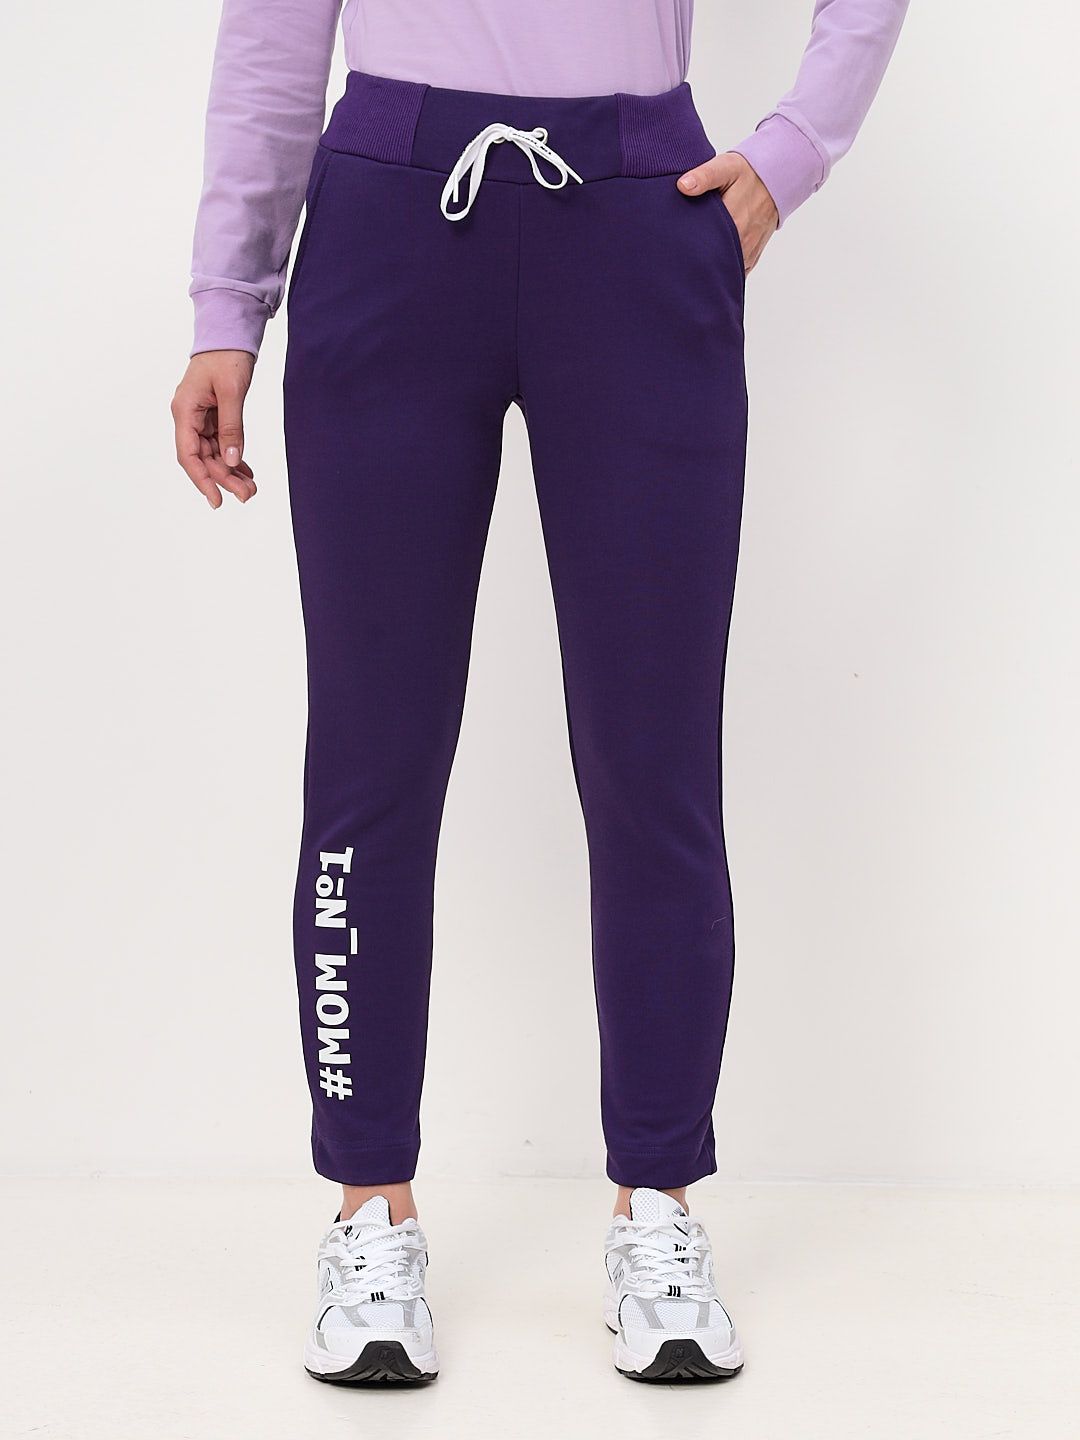 Спортивные брюки женские MOM №1 MOM-0136 фиолетовые XS